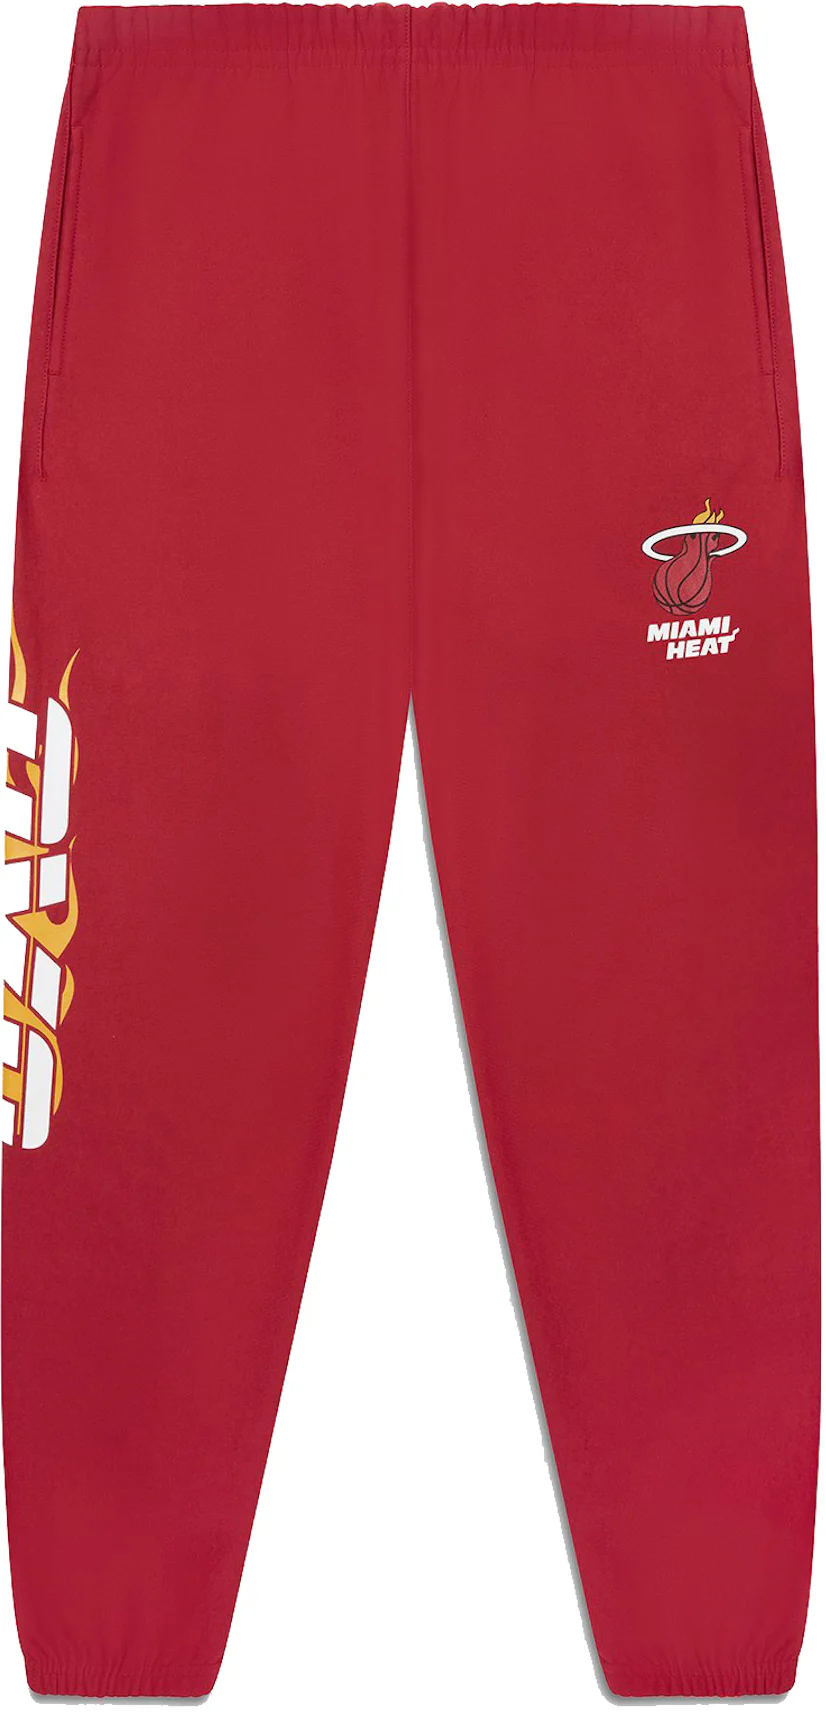 OVO x NBA Heat Fleece Pant Red Men's - FW21 - US